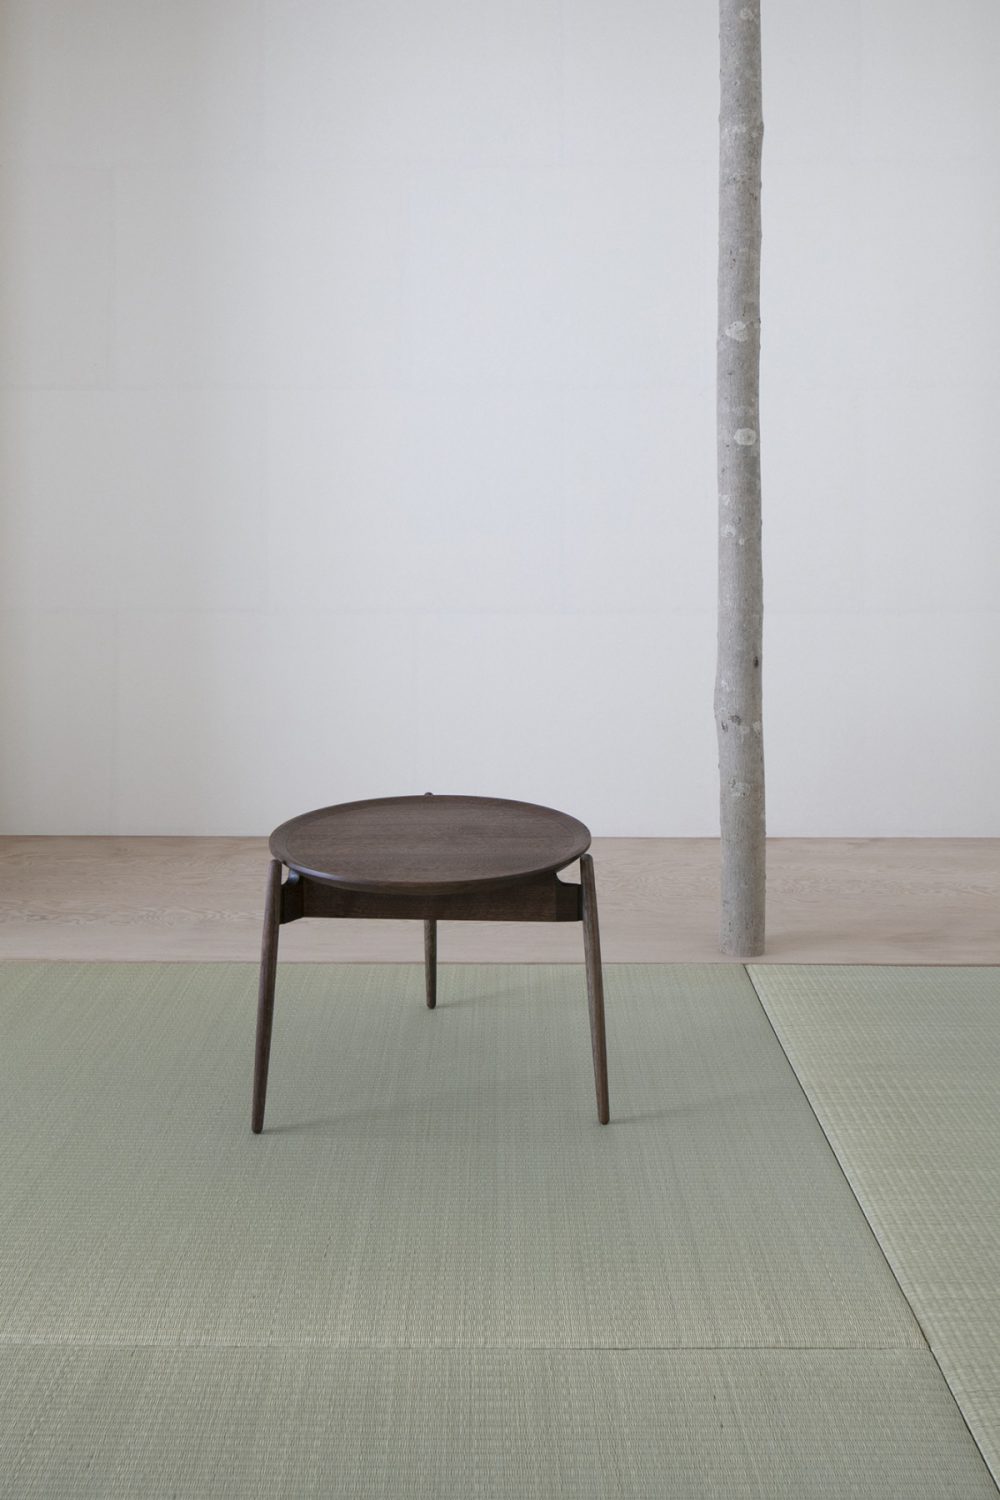 Zen table